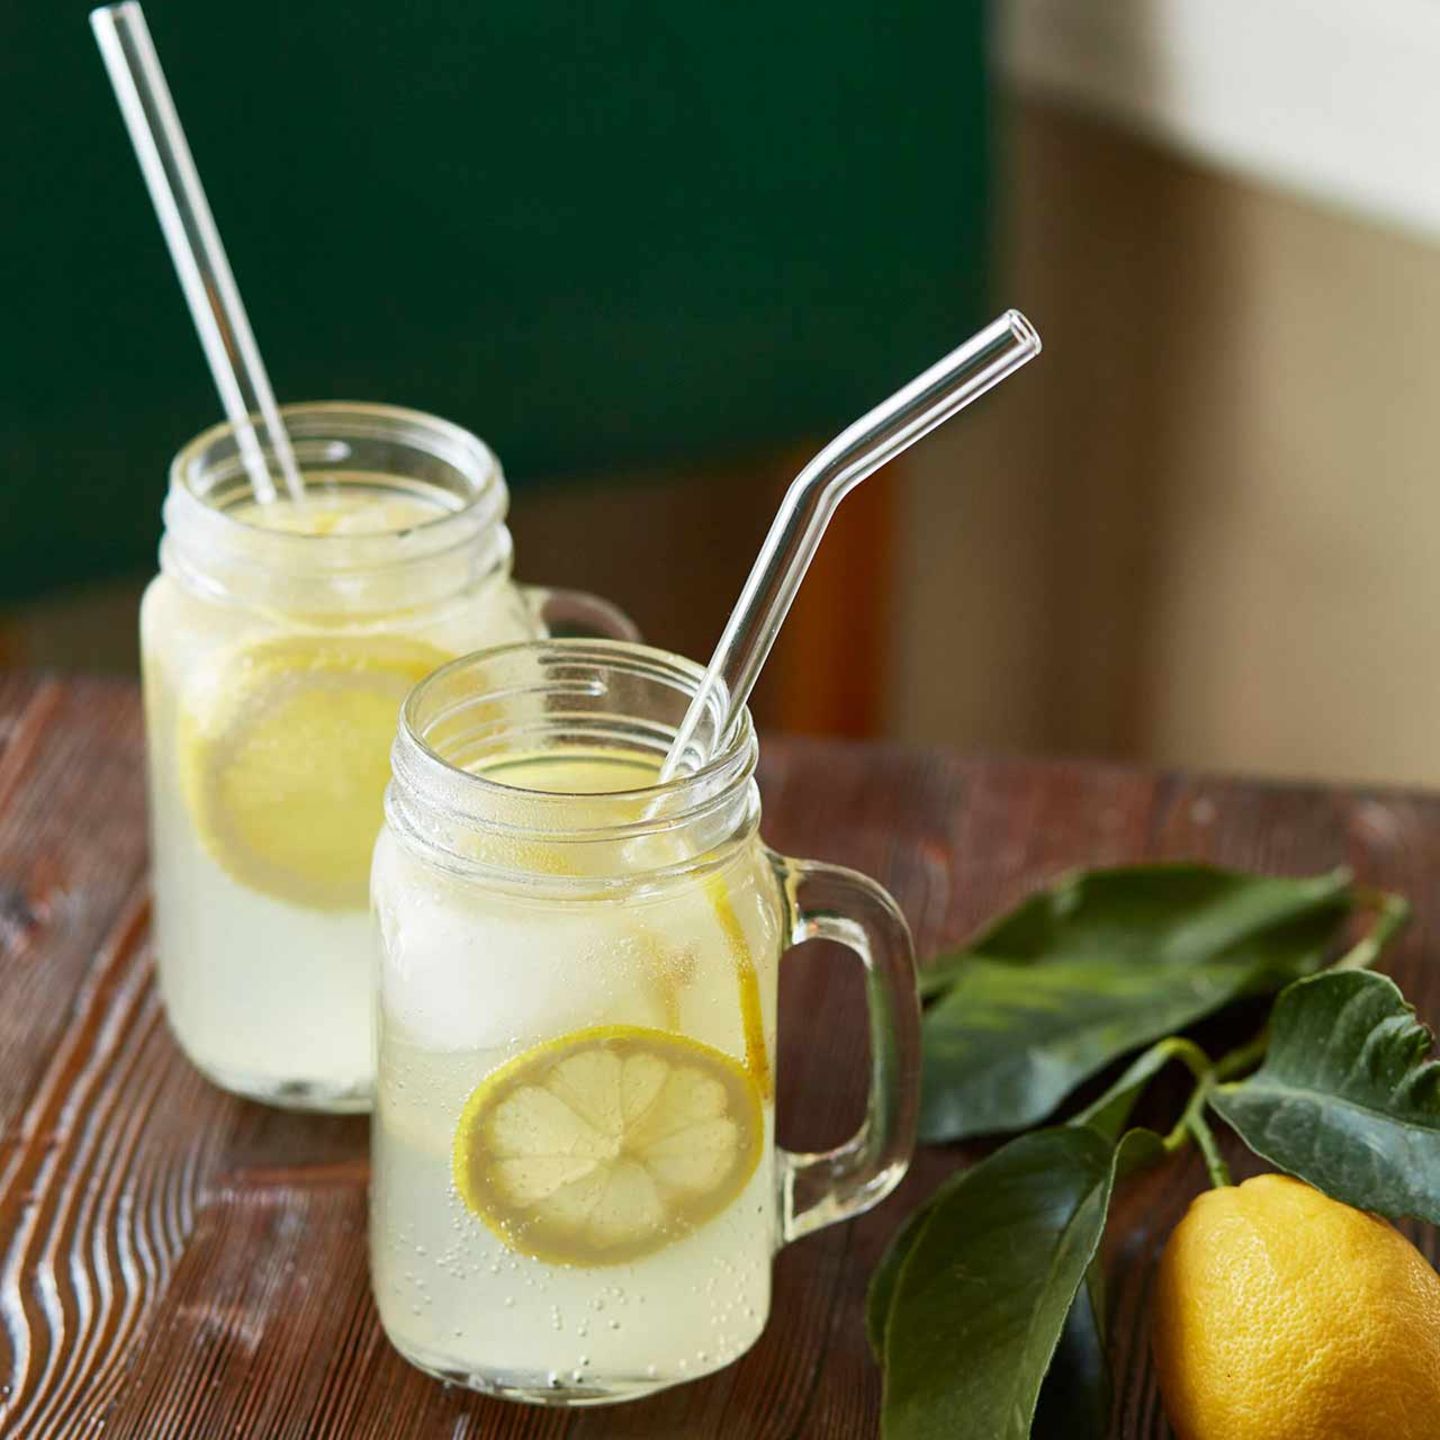 wiederverwendbare Trinkhalme aus Glas, Limonade mit Zirtonenscheiben in Einweggläsern serviert,